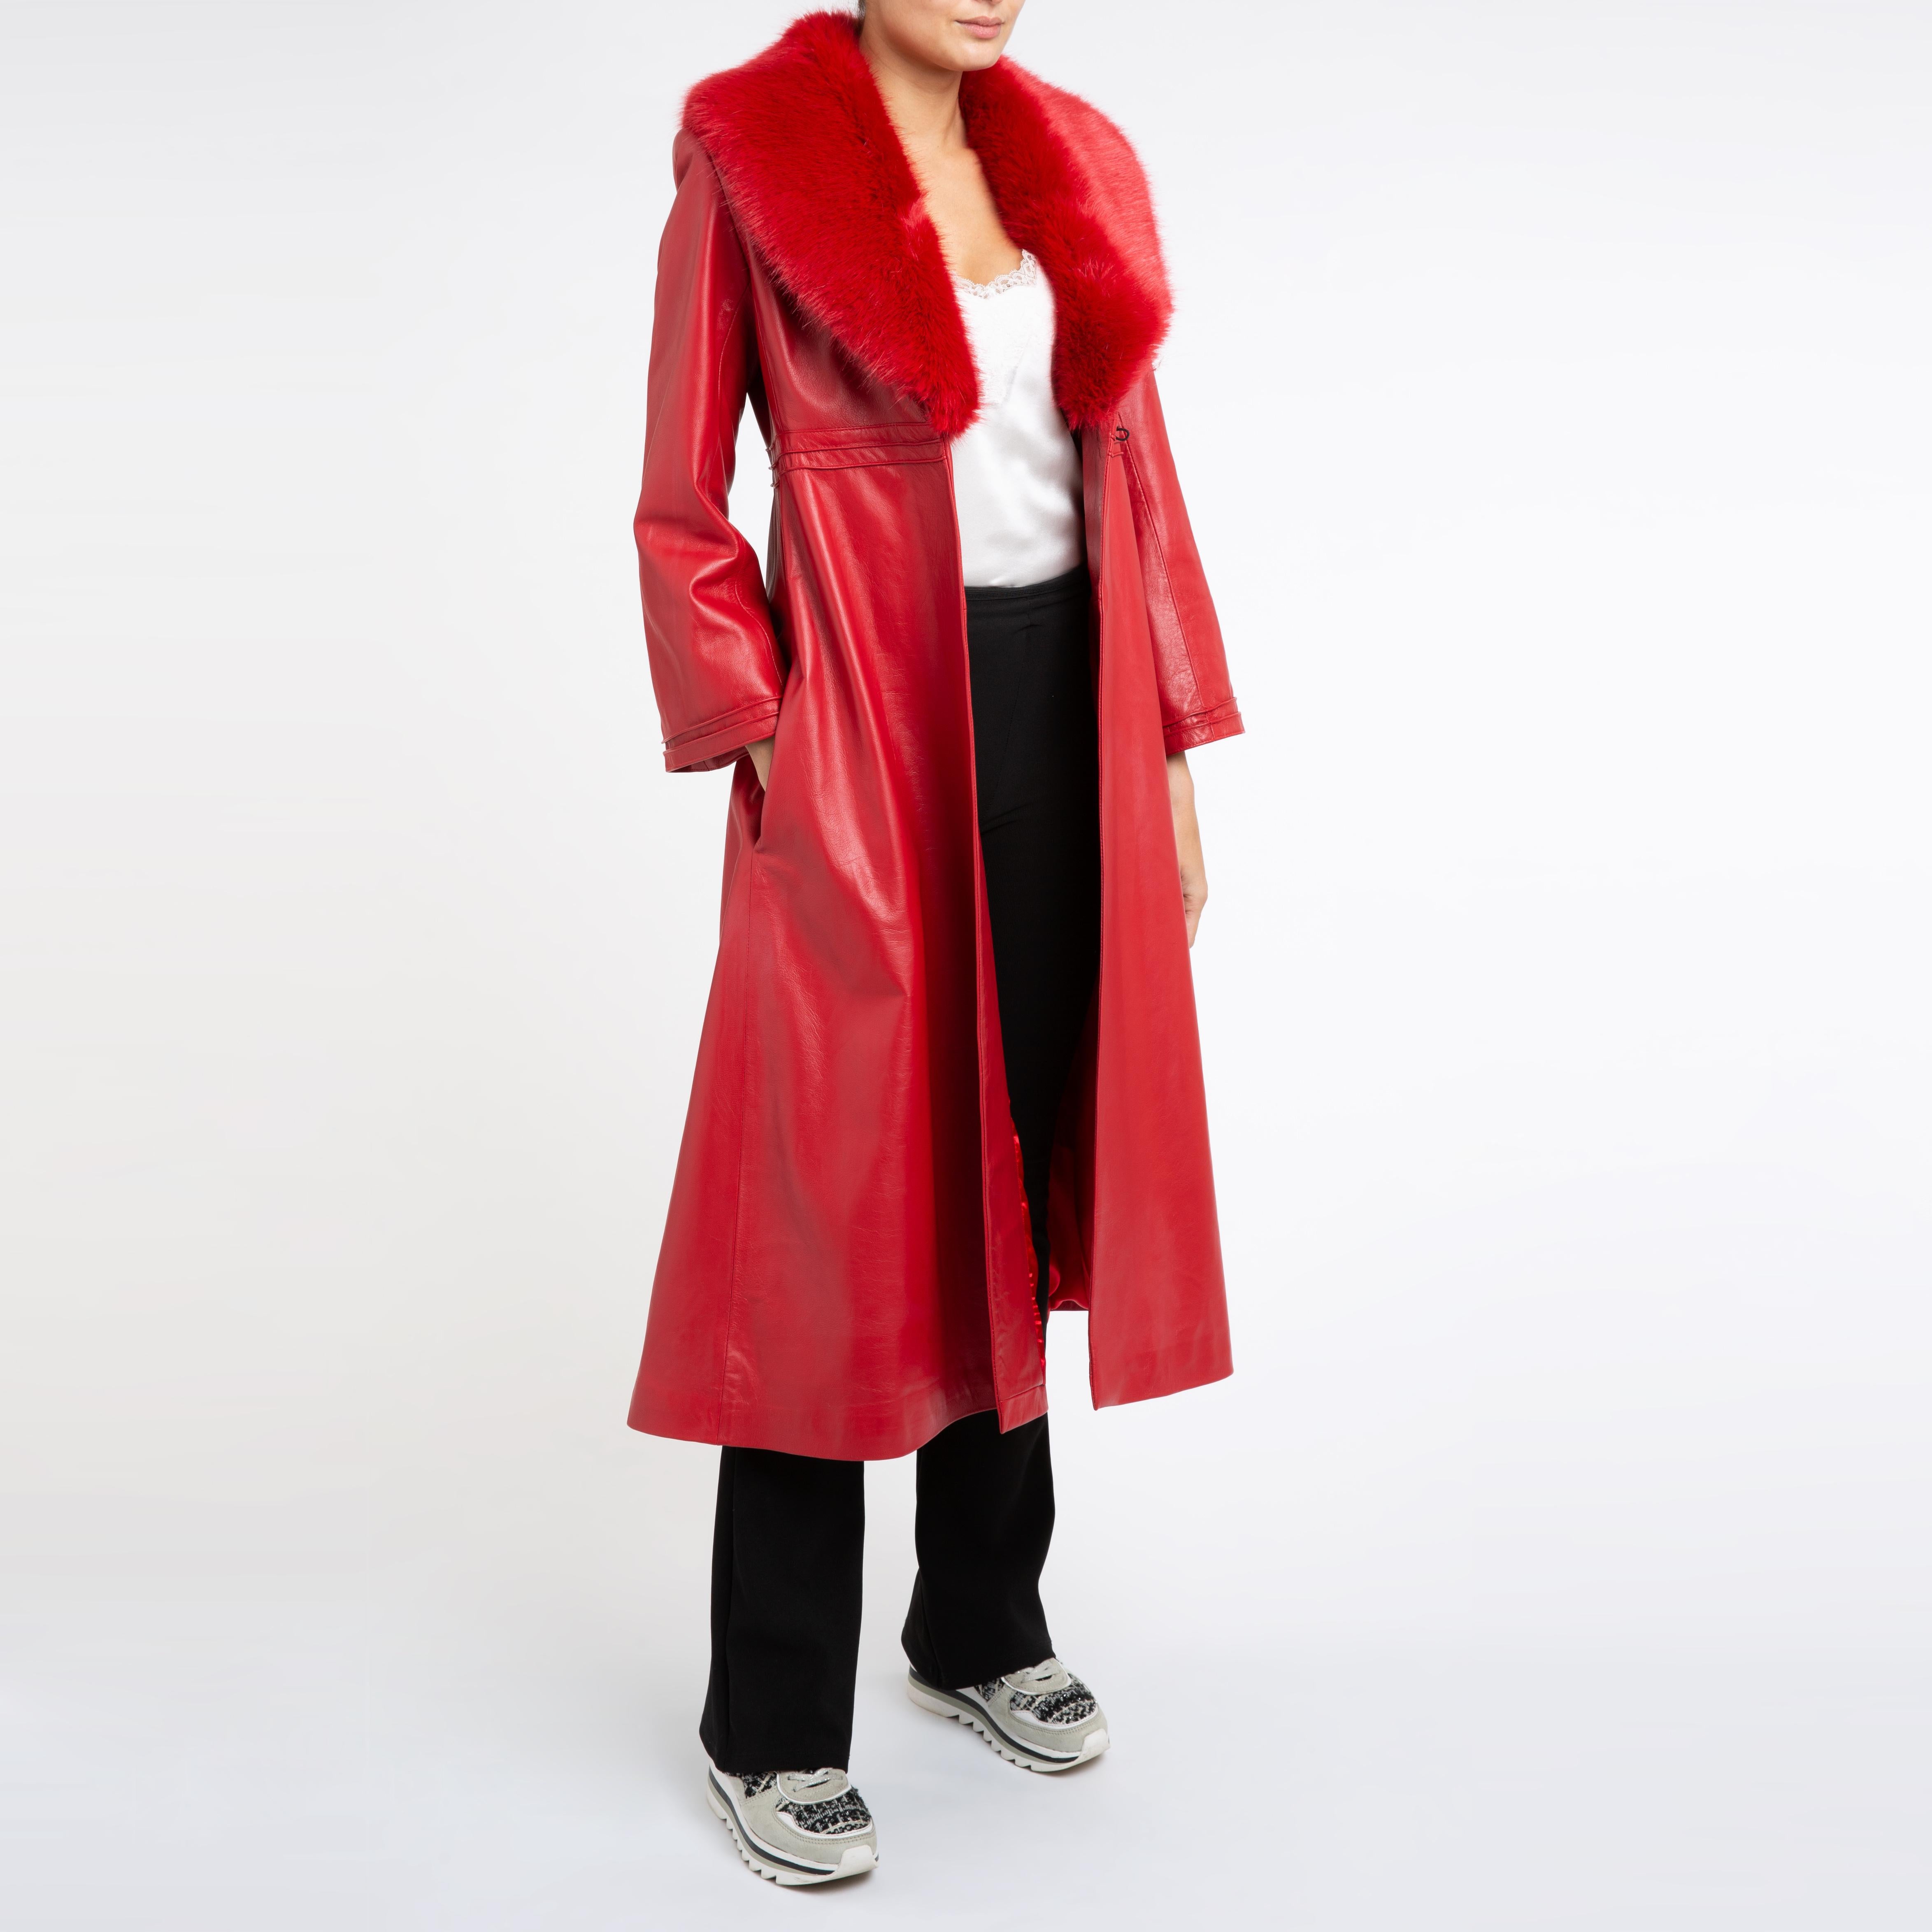 Verheyen London Manteau en cuir Edward avec col en fausse fourrure en rouge - Taille uk 10

Le manteau en cuir Edward créé par Verheyen London est un modèle romantique inspiré des années 1970 et de l'ère édouardienne de la mode.  Un design